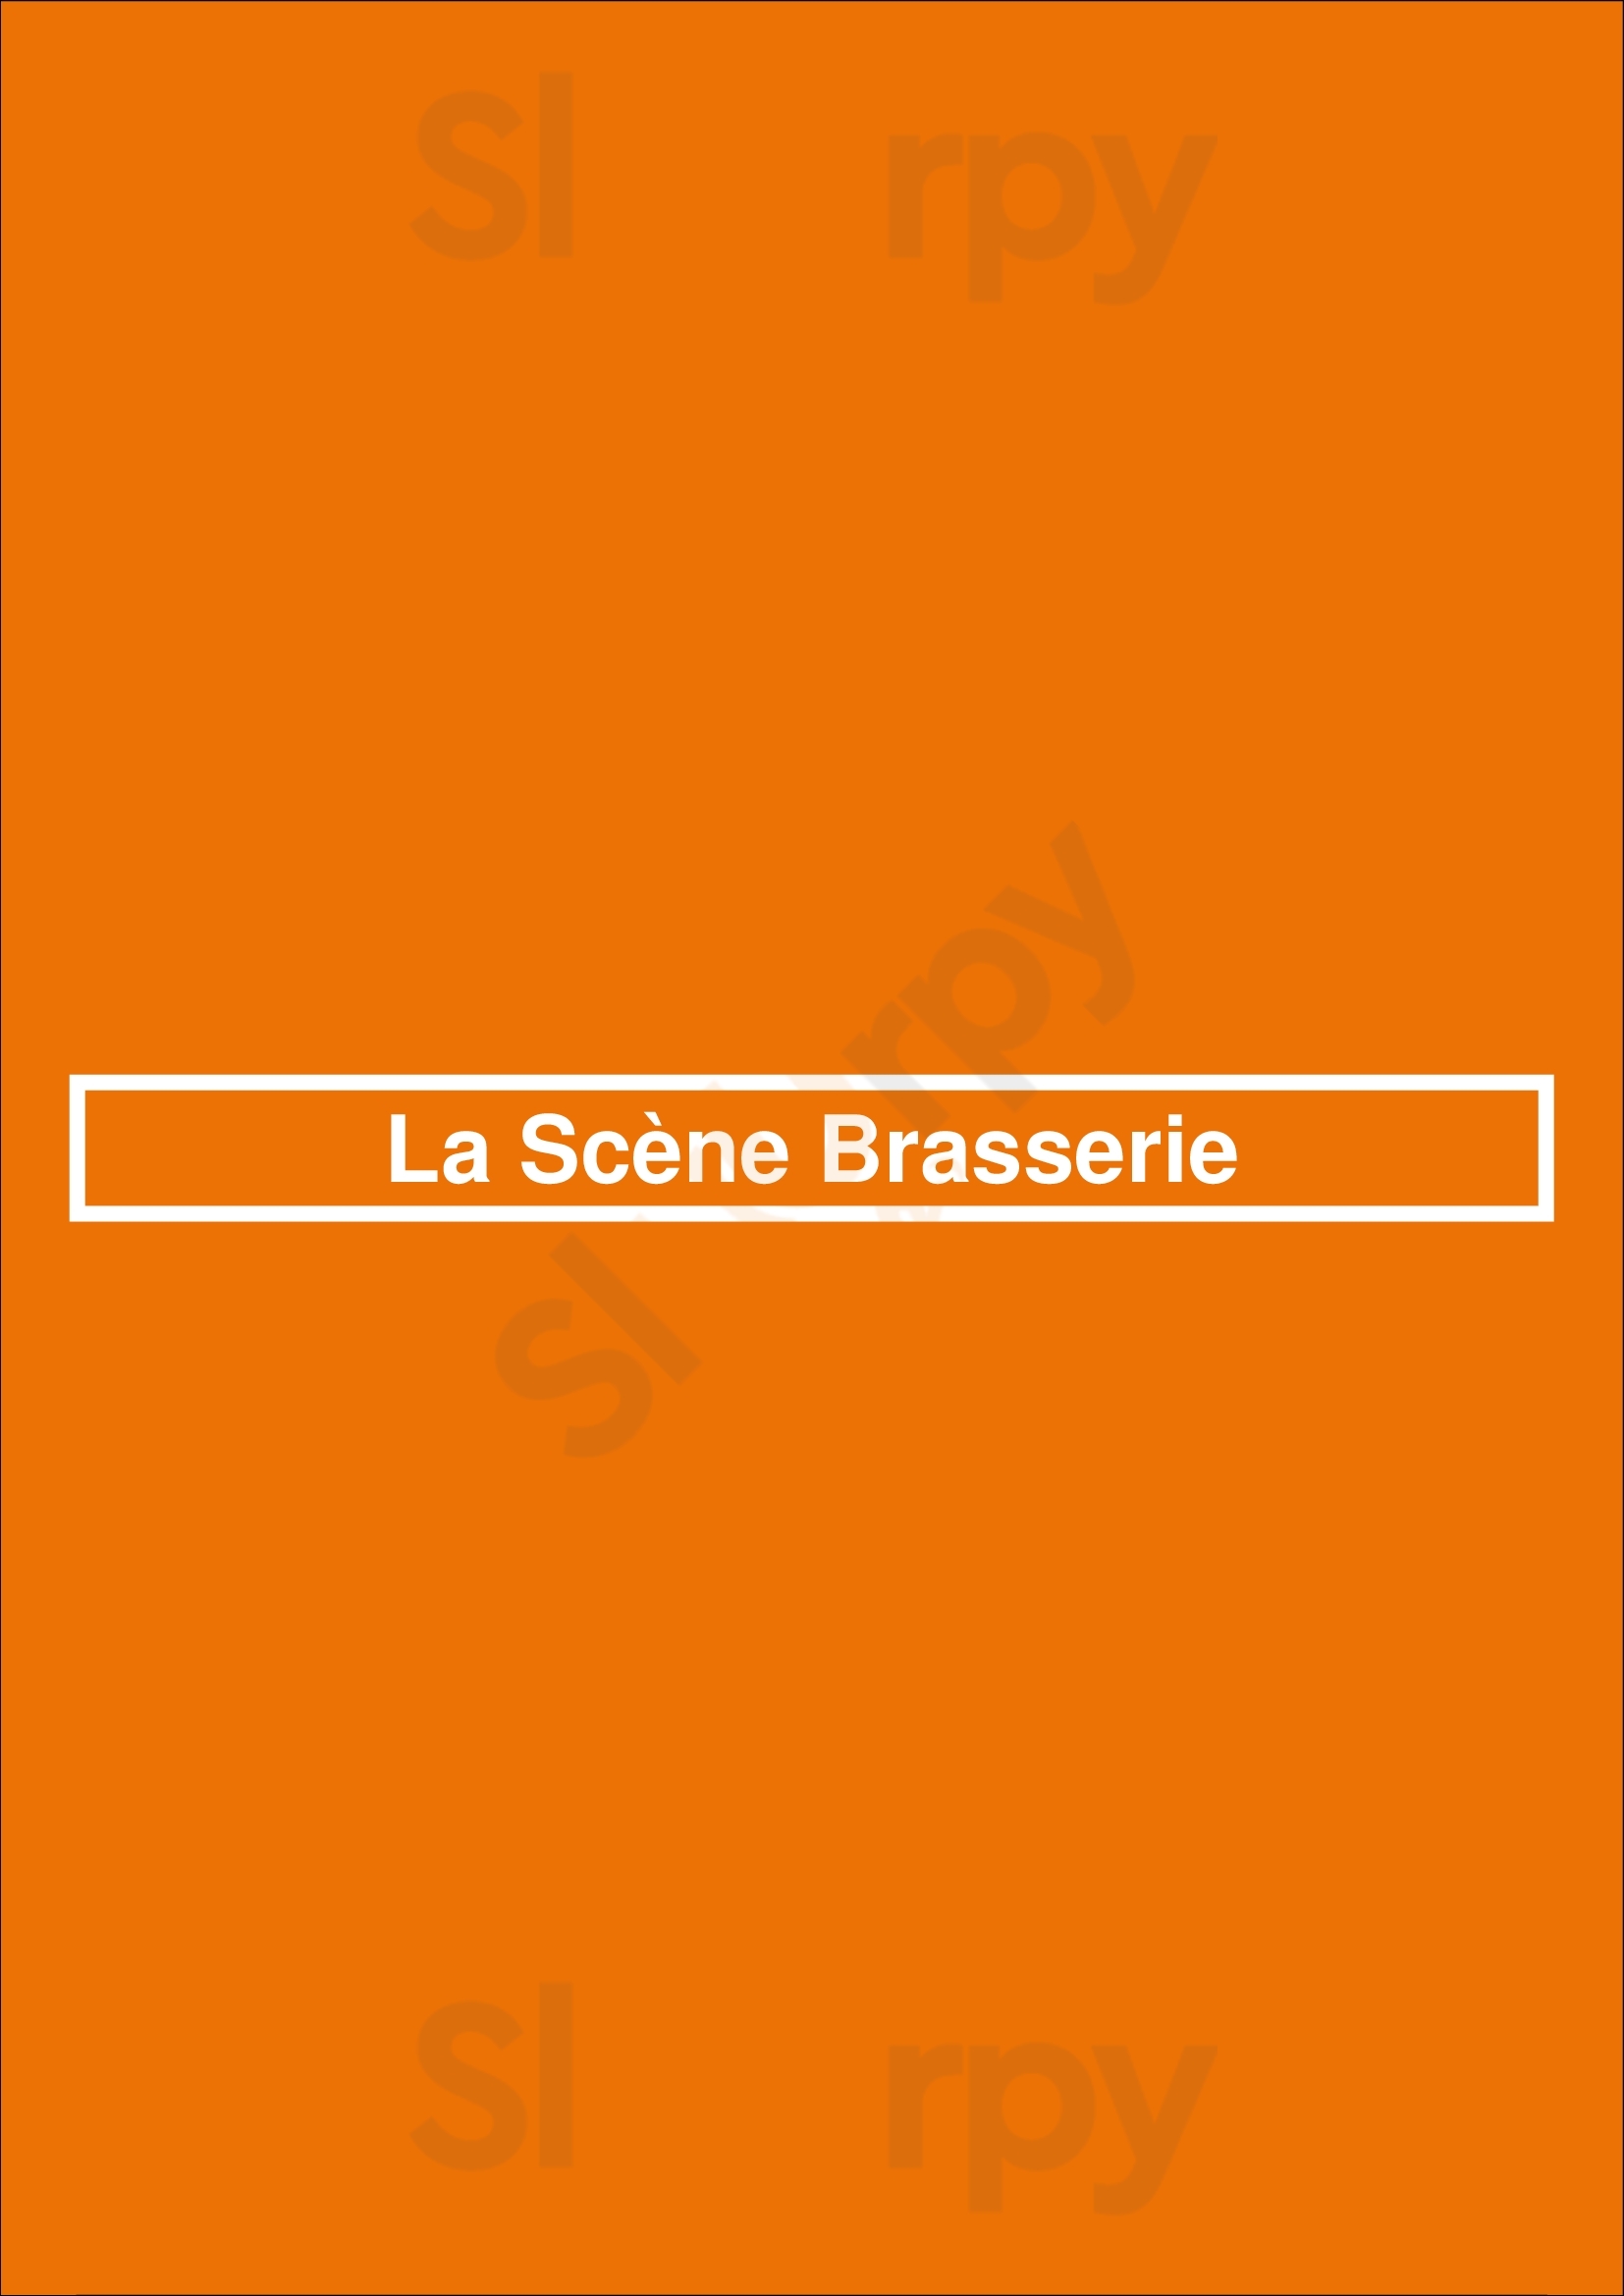 La Scène Brasserie Lyon Menu - 1